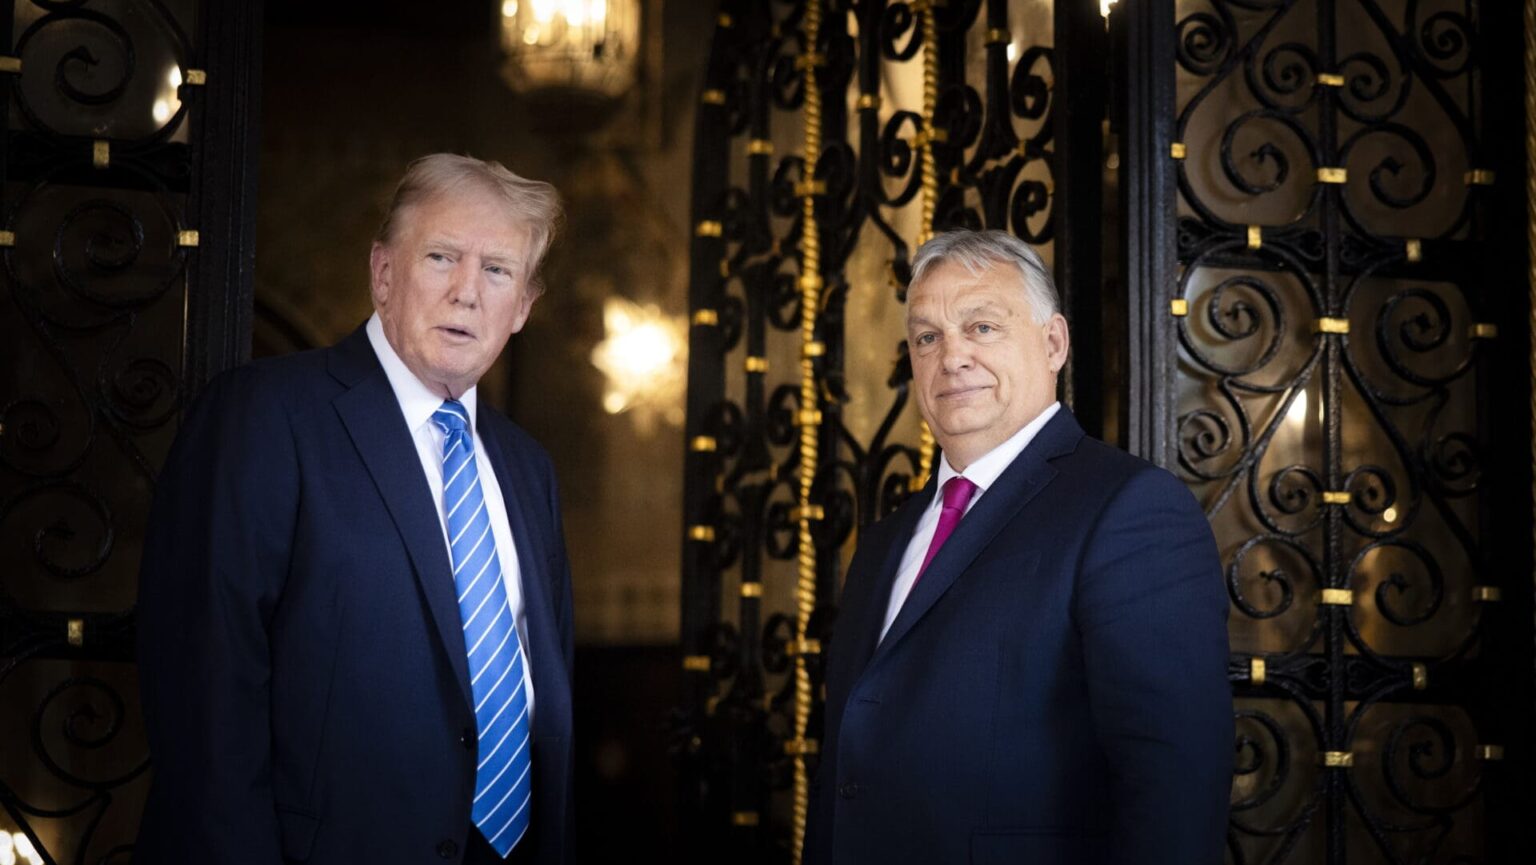 Viktor Orbán: ‘God has a plan for Donald Trump’